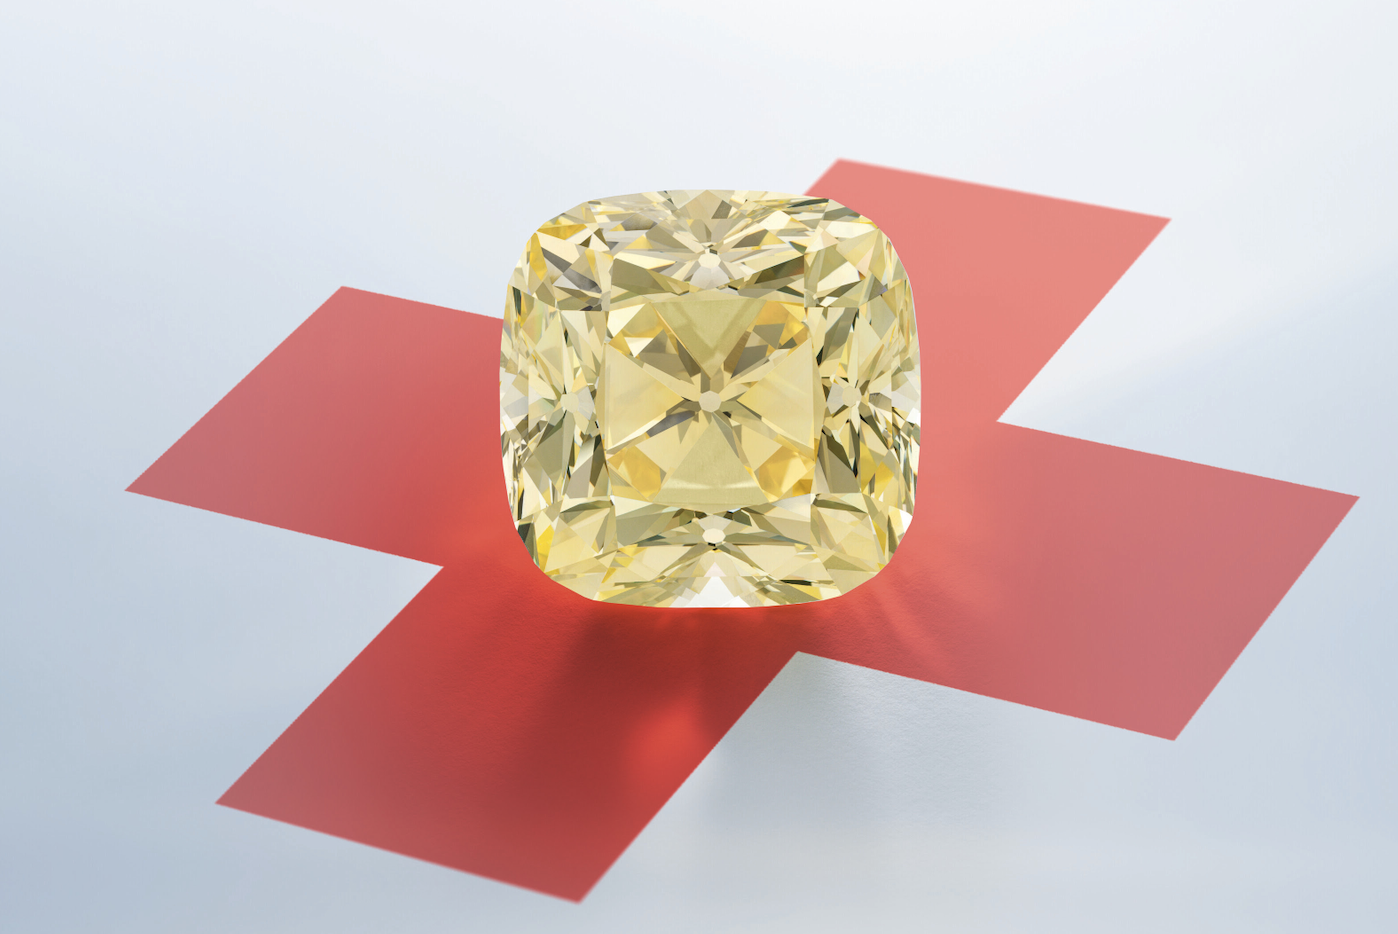 The Red Cross Diamond: un diamante giallo da oltre 200 carati torna in asta da Christie’s per la terza volta